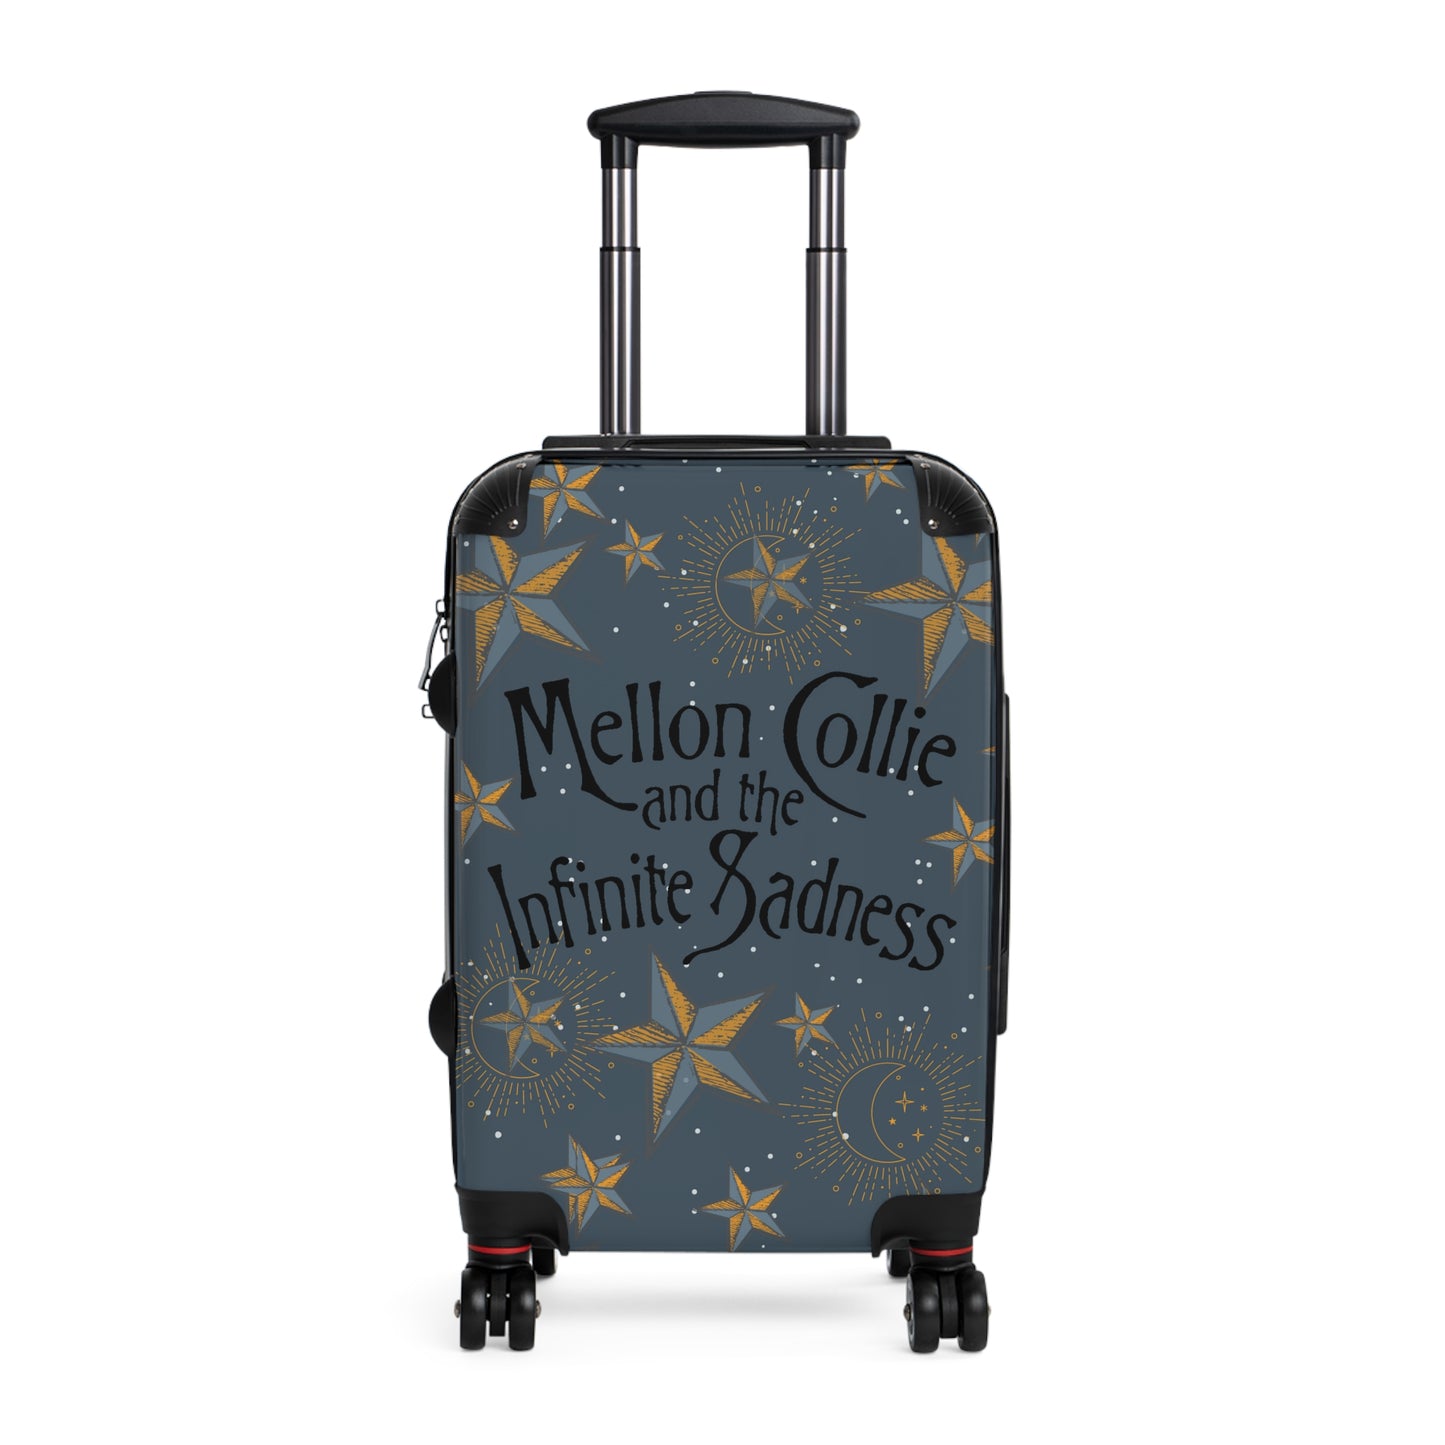 Smashing Pumpkins Suitcase, Mellon Collie & the Infinite Sadness 3 Sizes